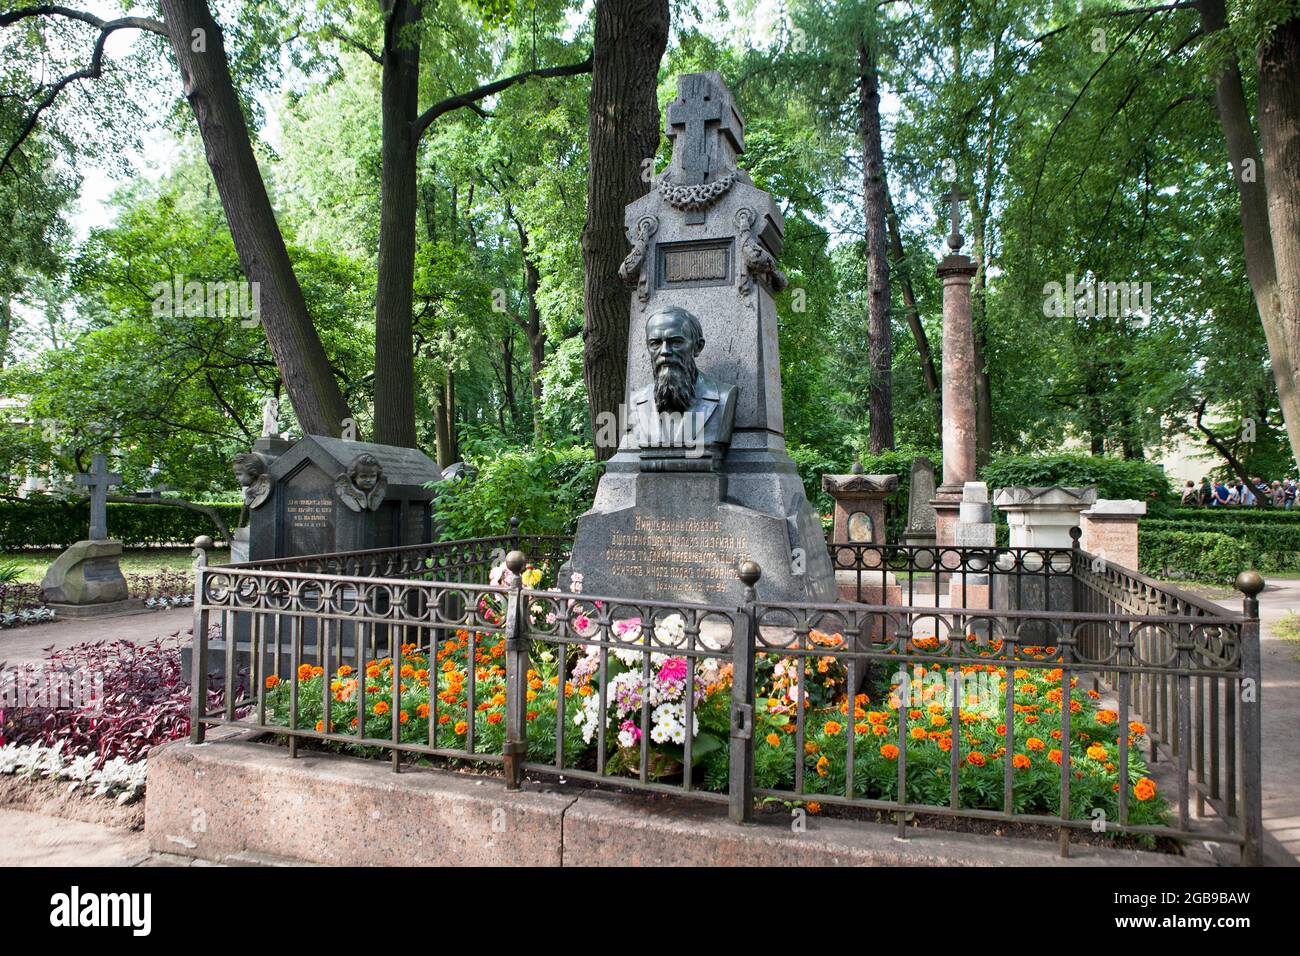 Monastère Alexandre Nevsky enterré, Fyodor Mikhaïlovich Dostoevsky, Saint-Pétersbourg, Russie Banque D'Images